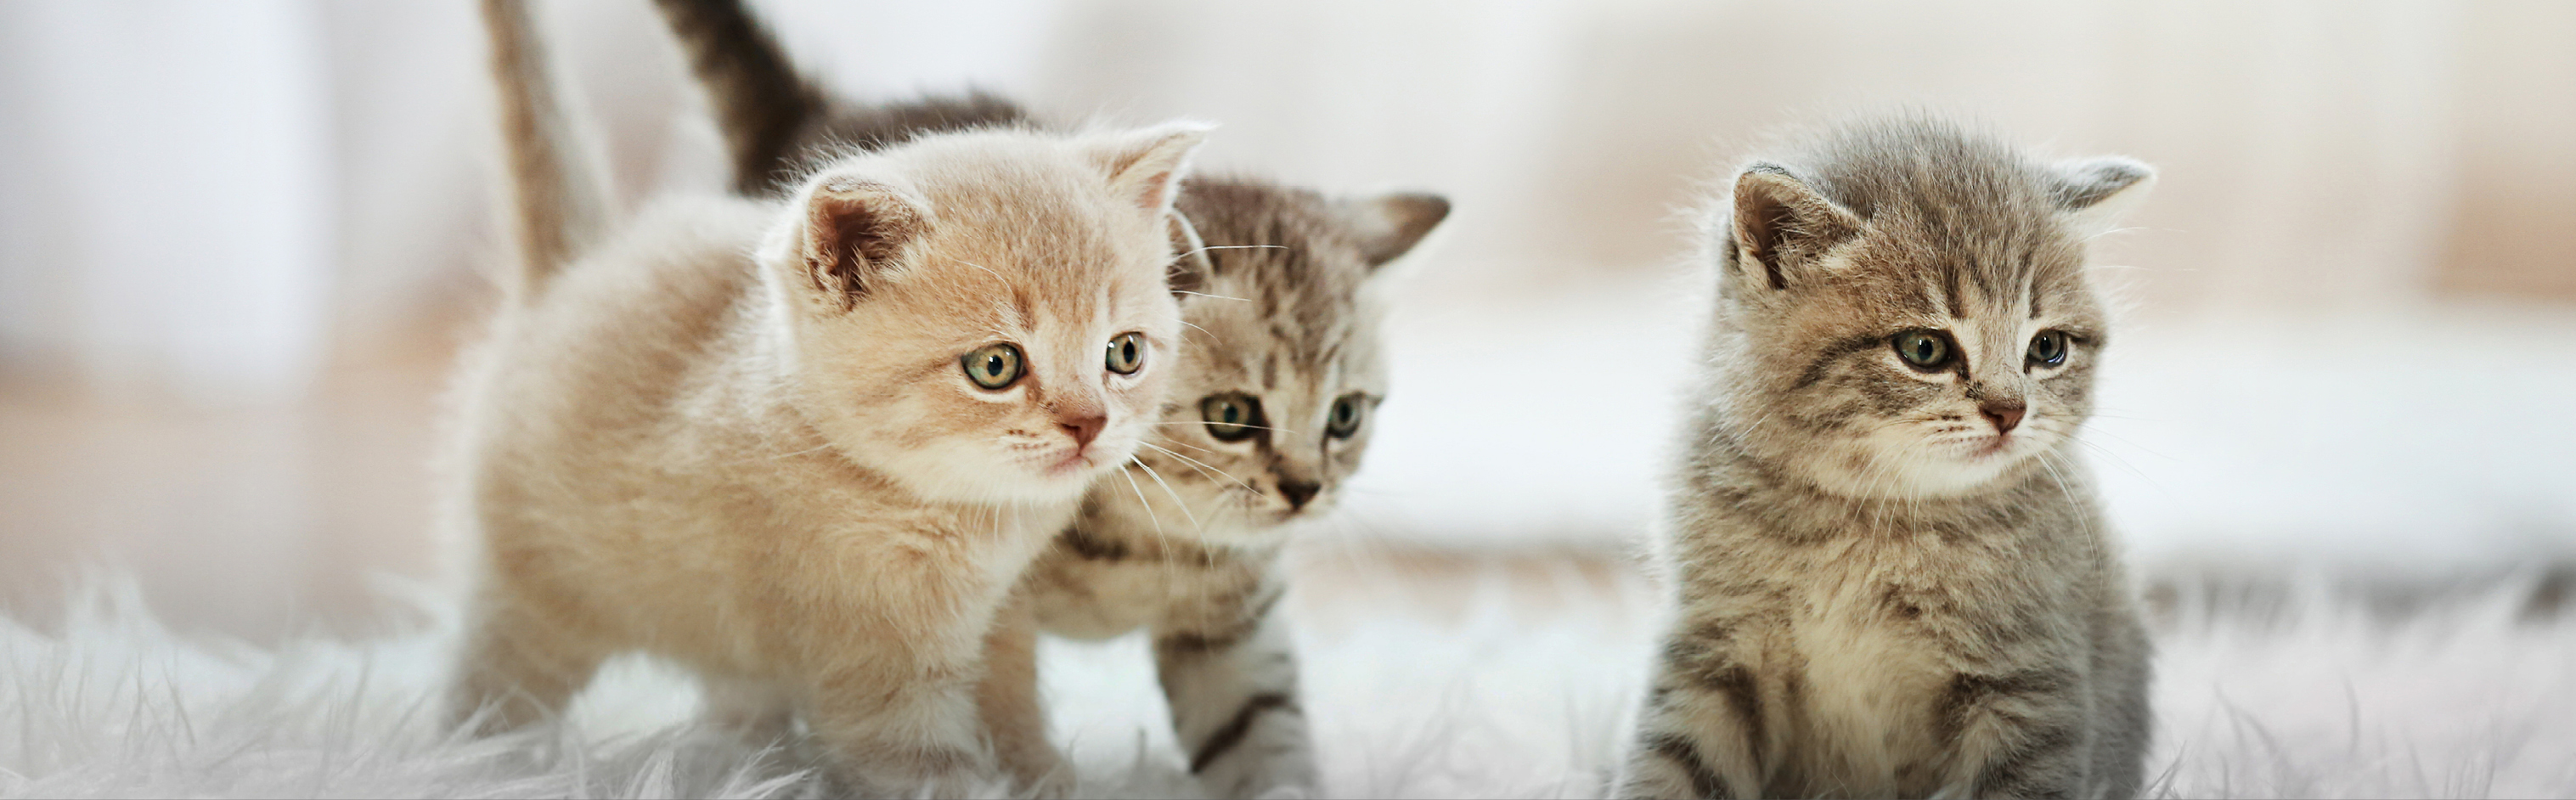 3 chatons qui marchent et s'assoient sur un tapis